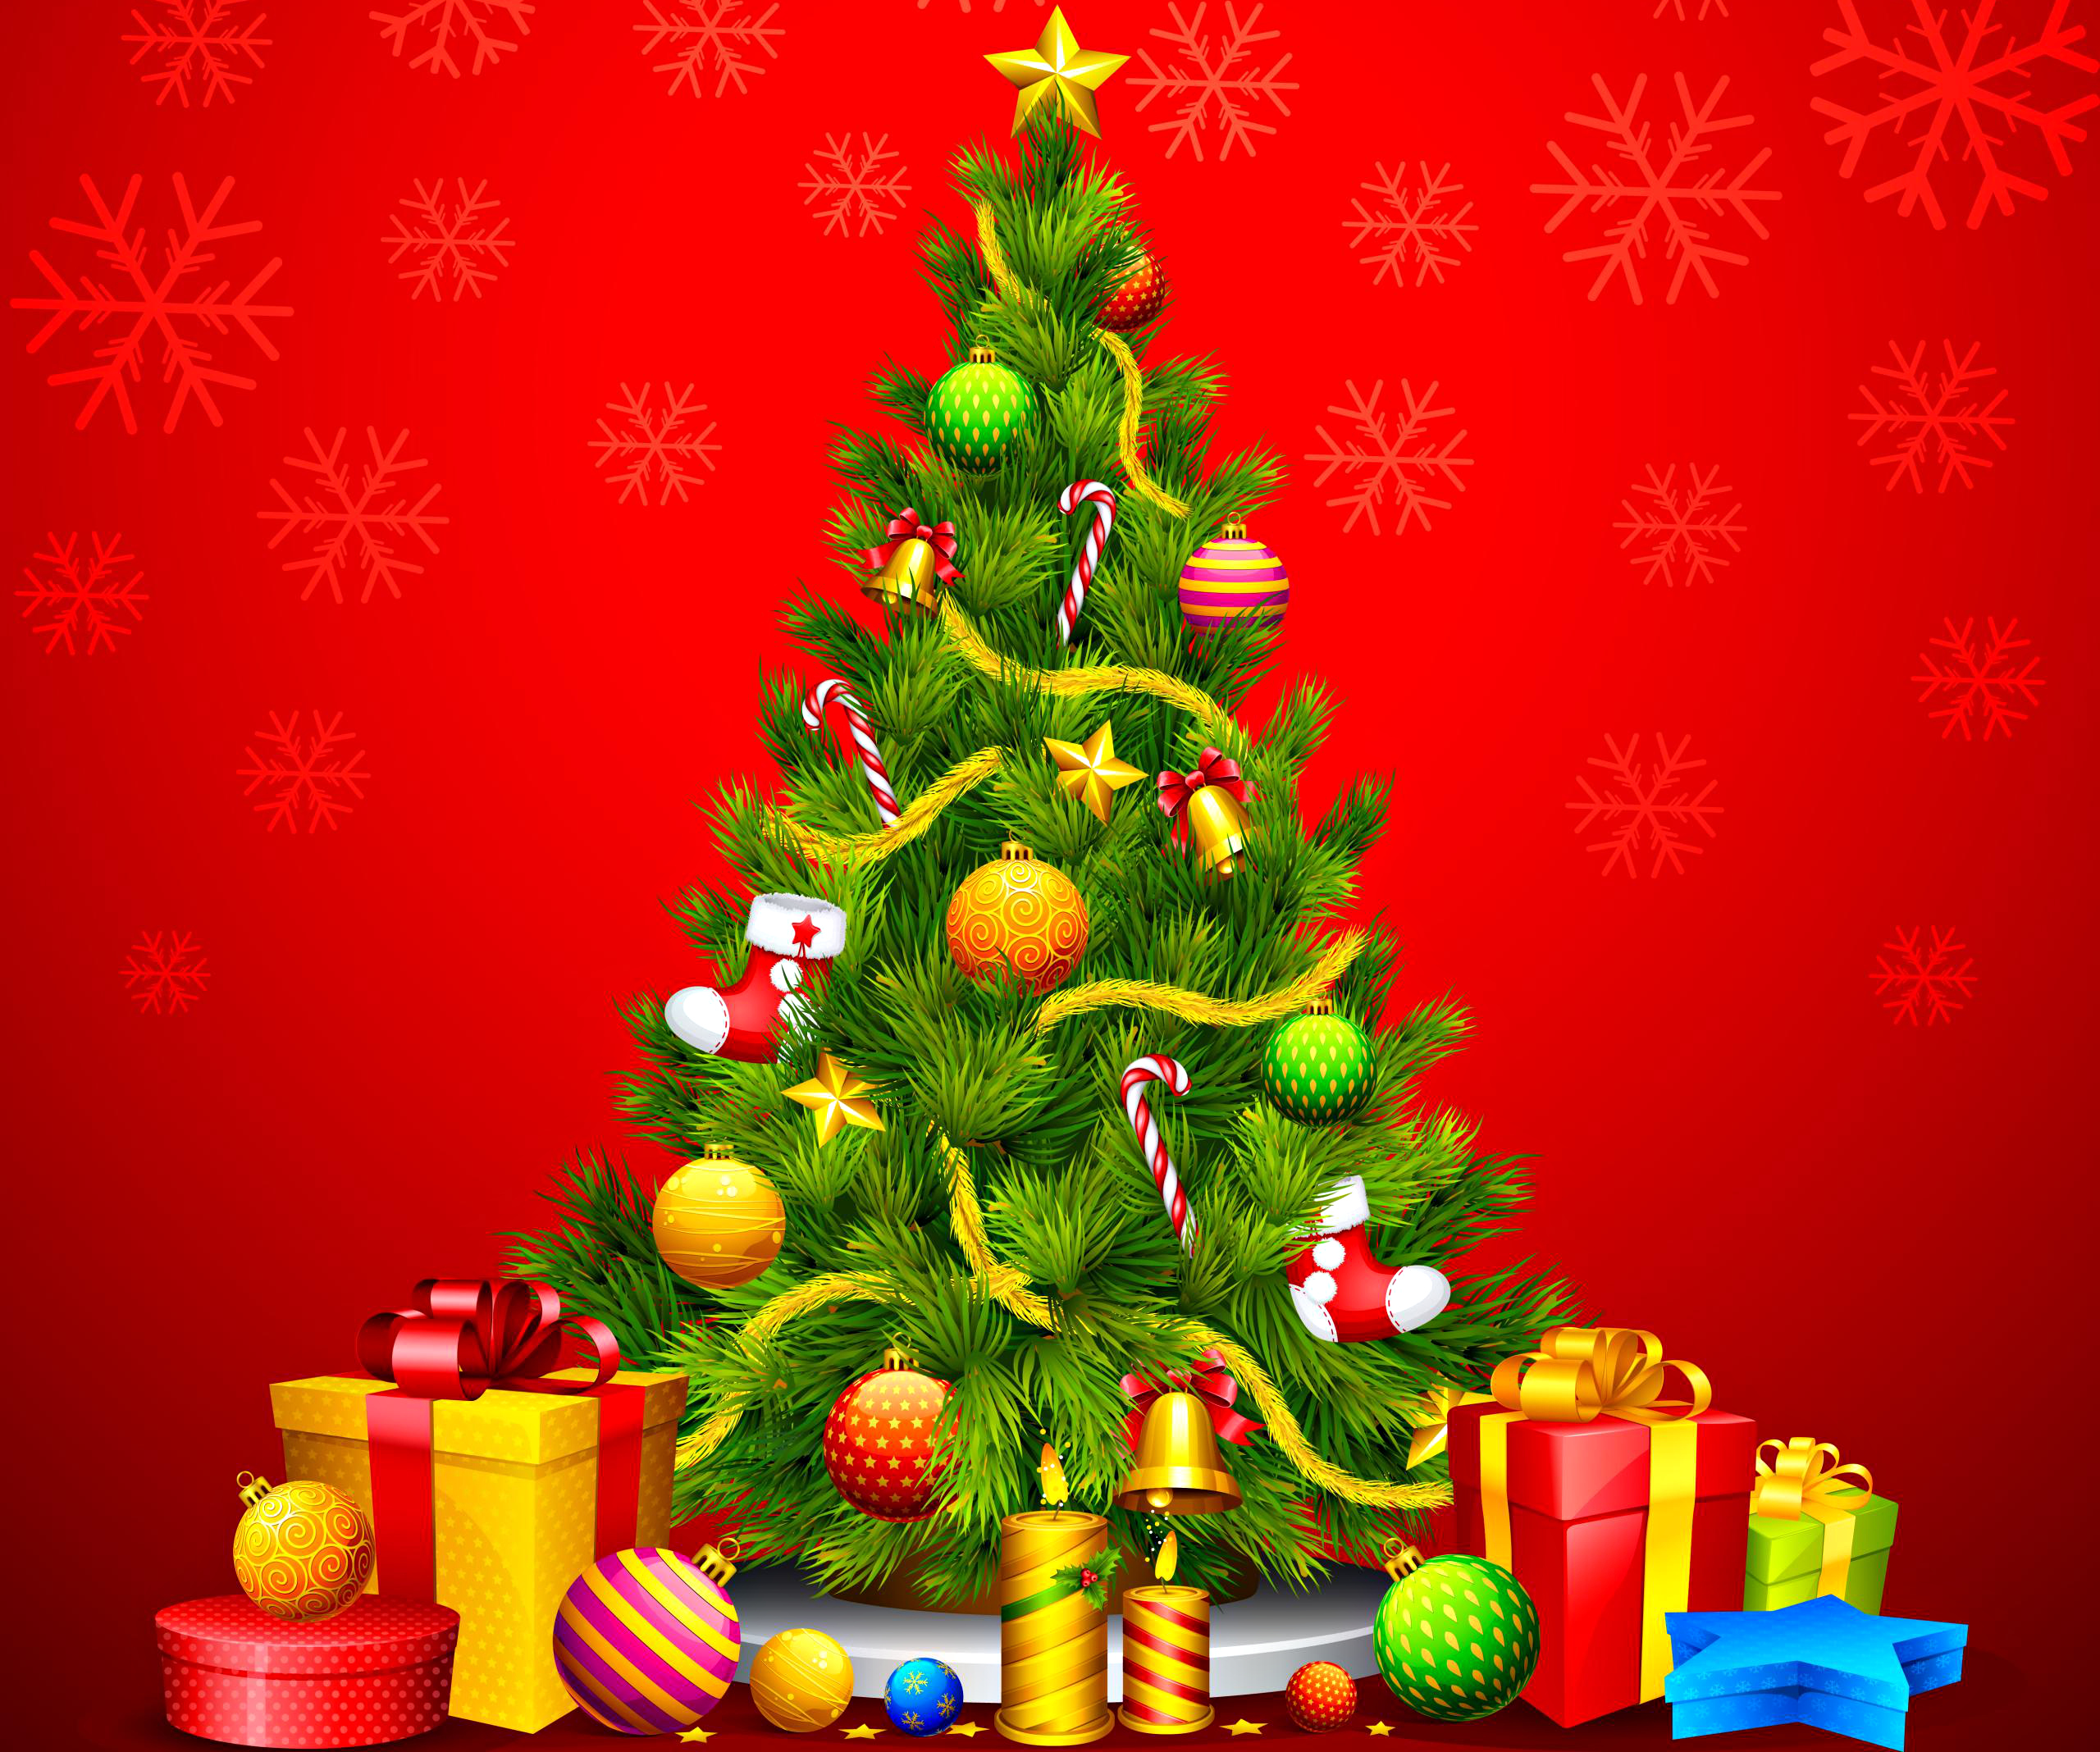 baum live wallpaper,weihnachtsbaum,weihnachtsdekoration,weihnachtsschmuck,weihnachten,heiligabend